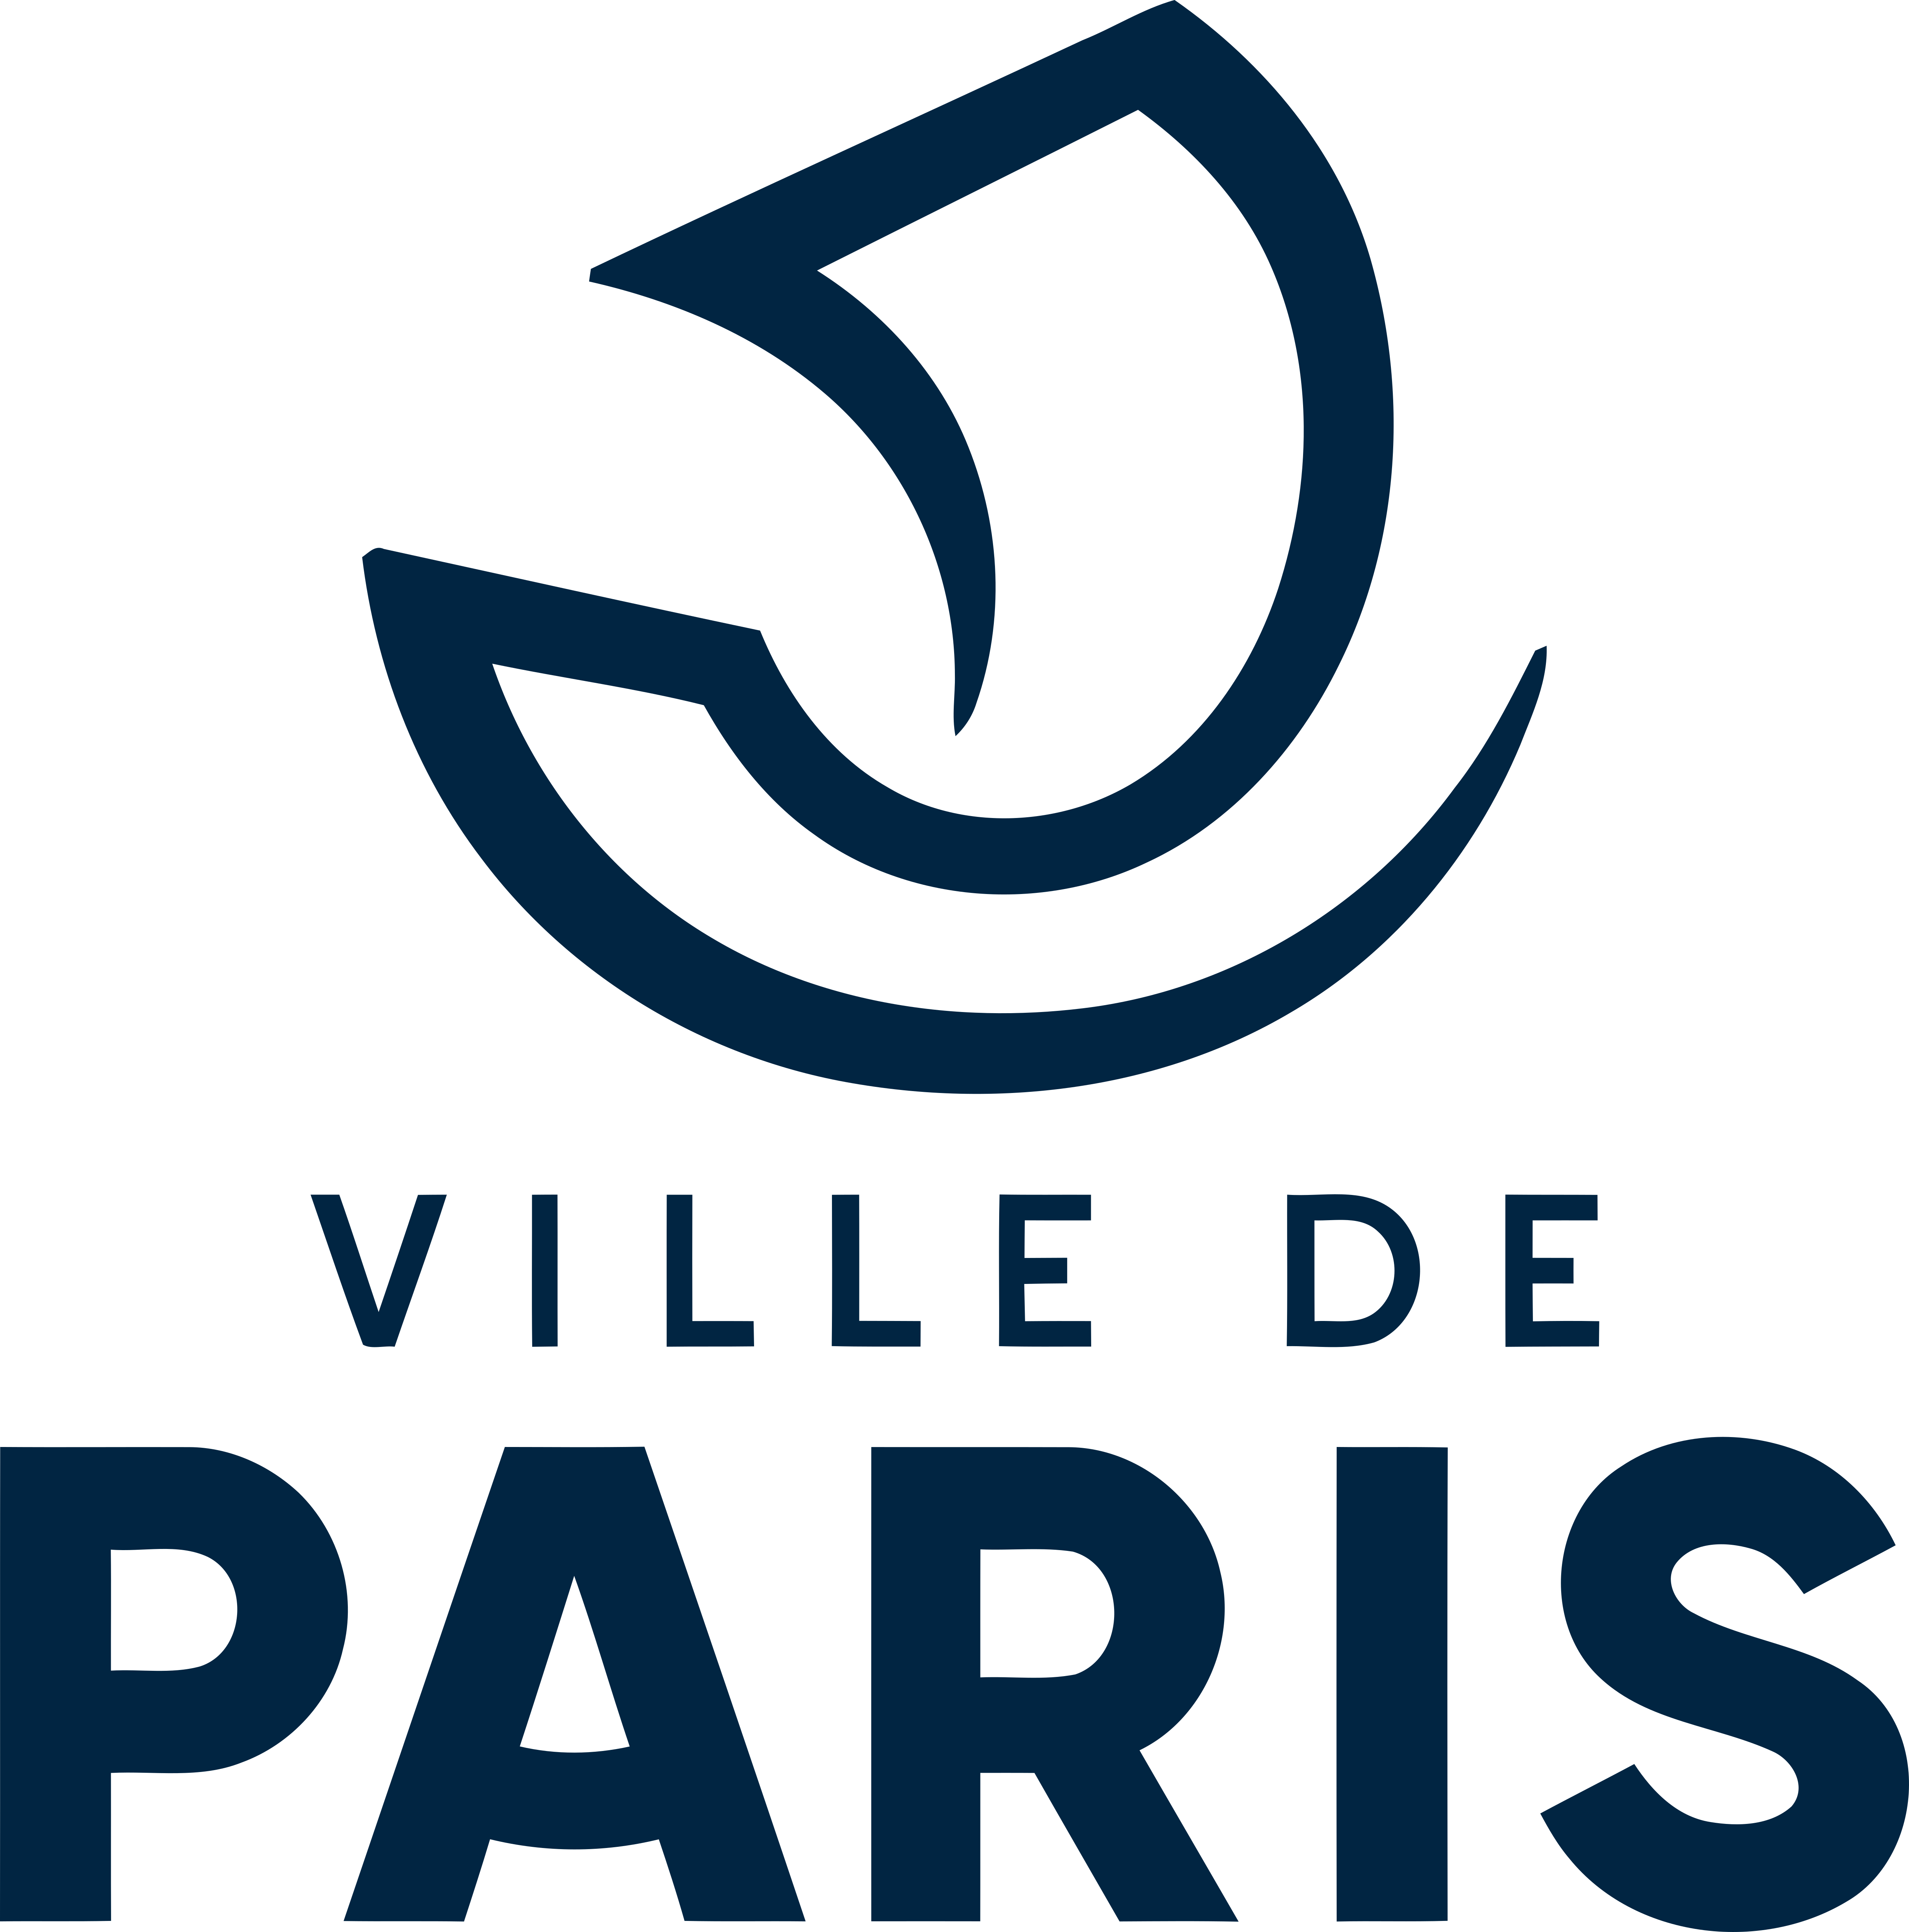 Paris 2024 Logo Png And Vector Logo Download Images A vrogue.co